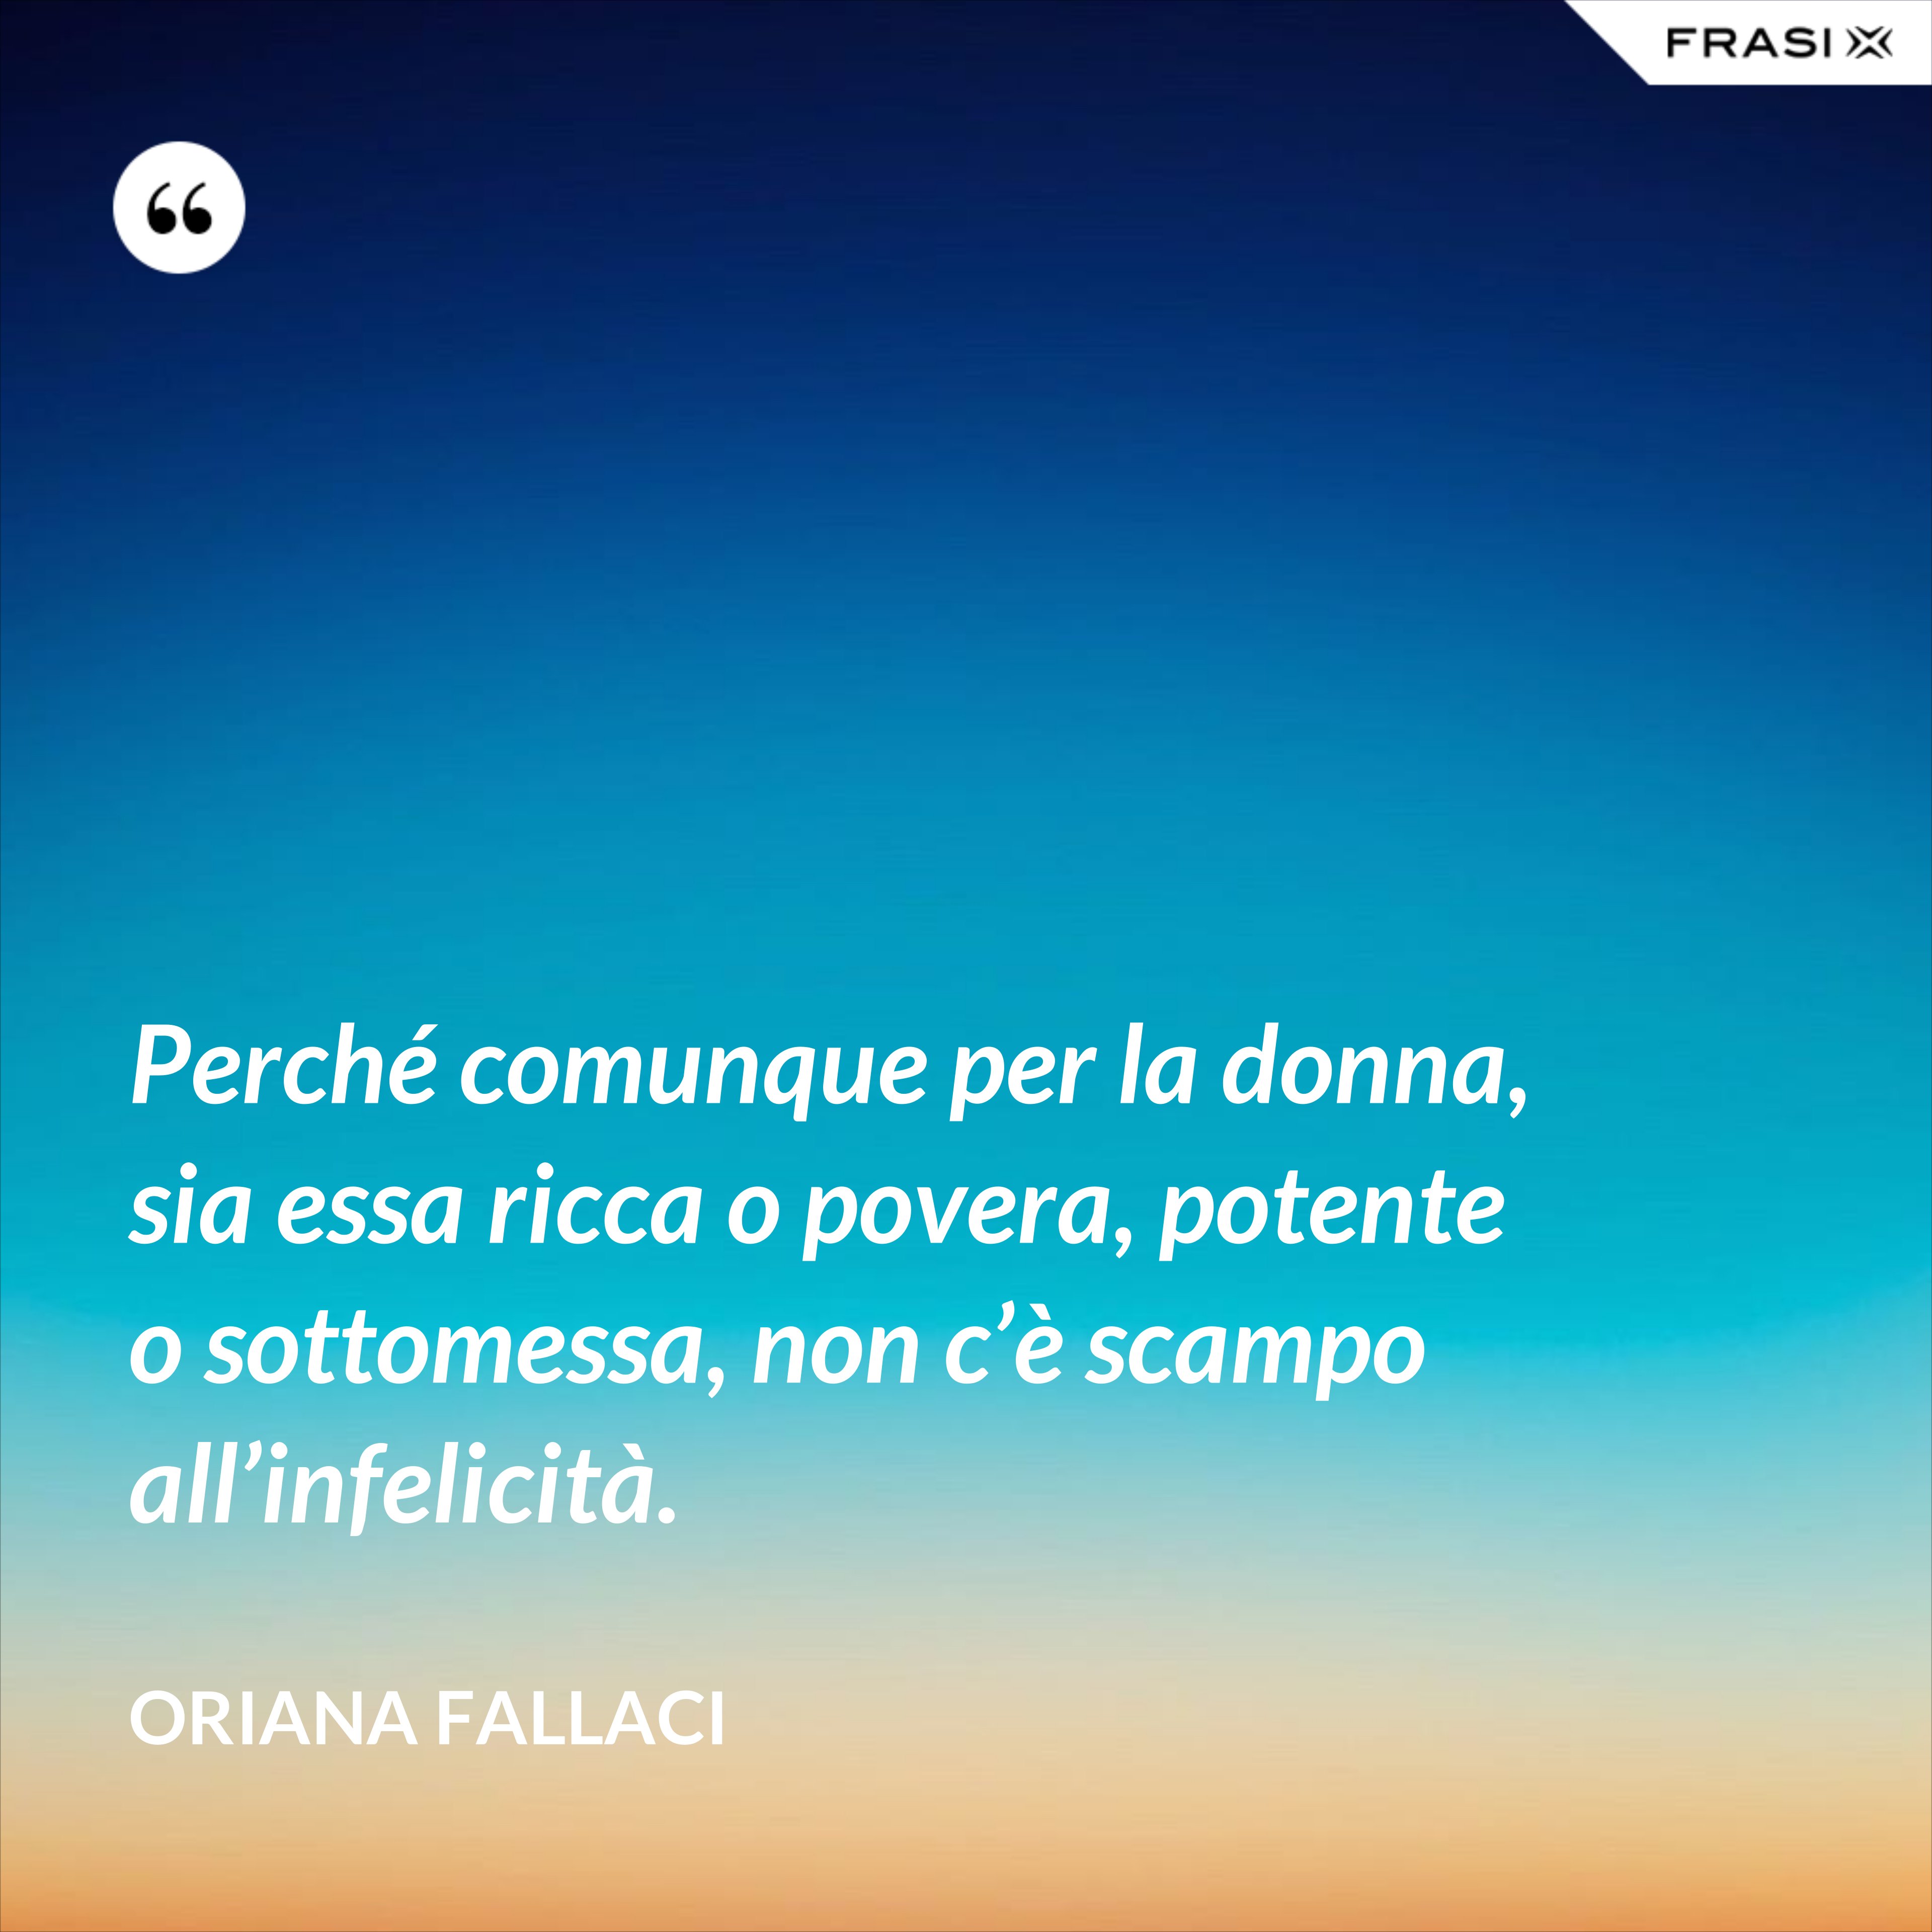 Perché comunque per la donna, sia essa ricca o povera, potente o sottomessa, non c’è scampo all’infelicità. - Oriana Fallaci